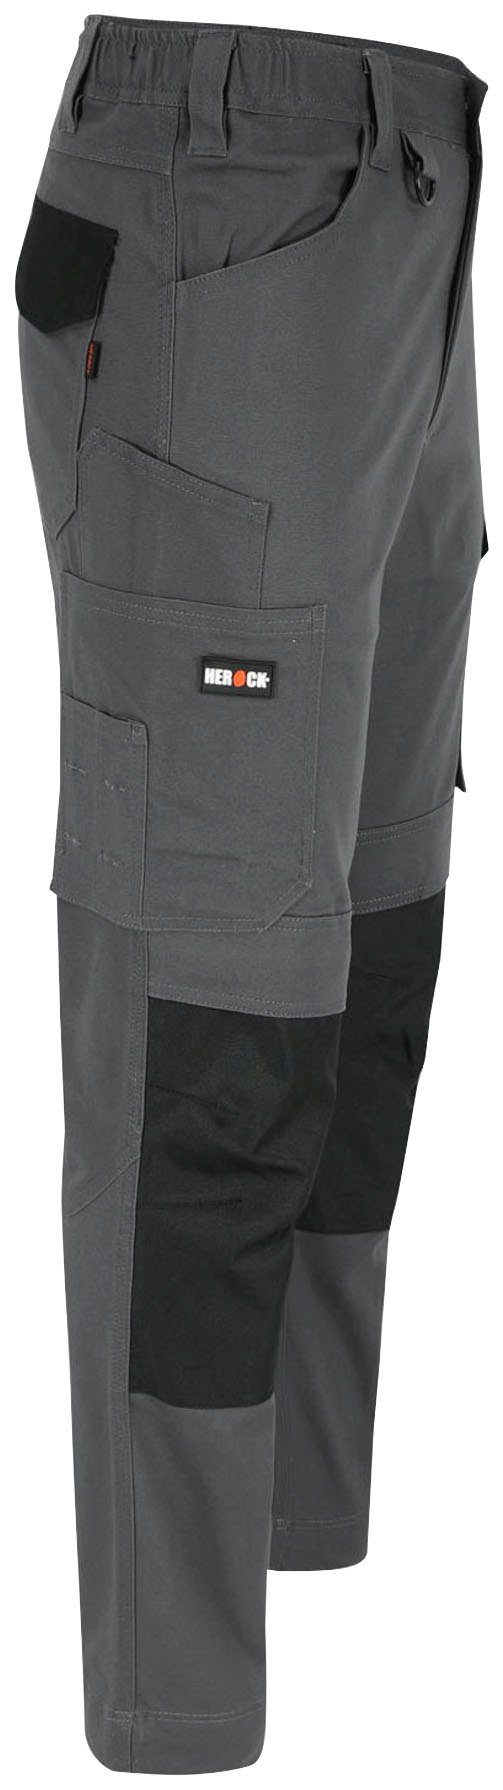 Herock Arbeitshose DERO Slim Fit grau wasserabweisend Multi-Pocket, 2-Wege-Stretch, Passform